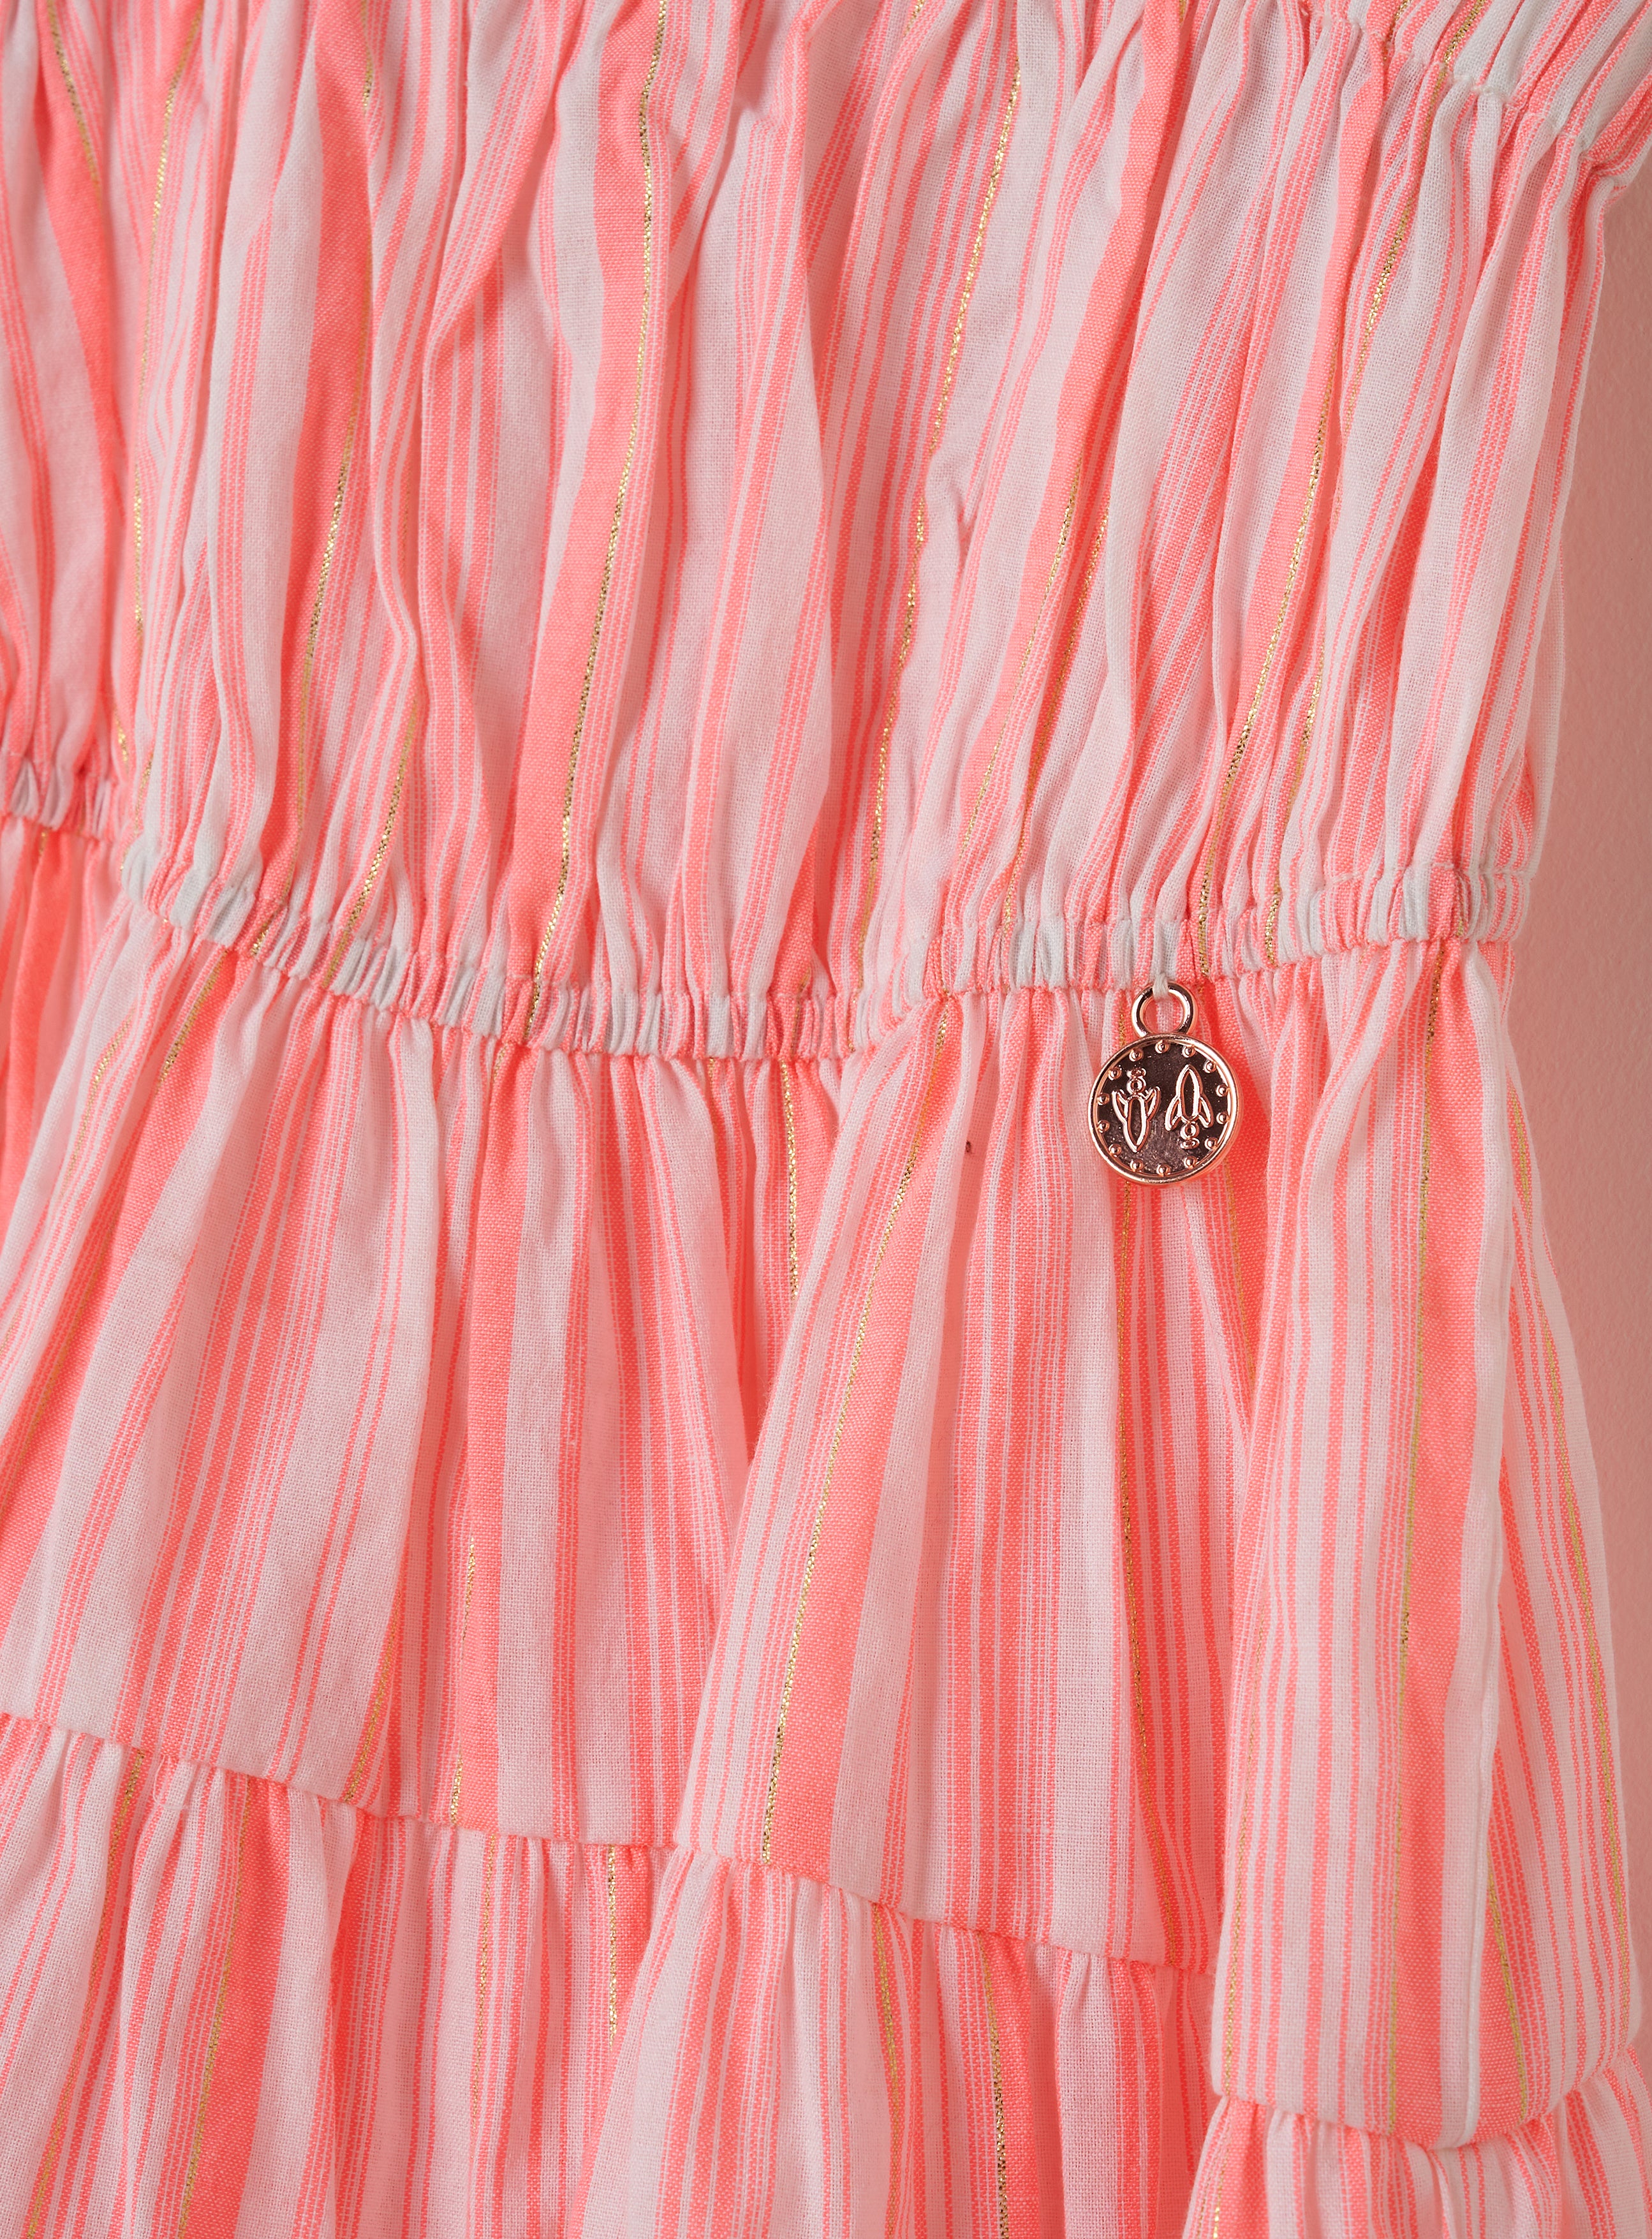 Girls Striped Woven Pink Dress